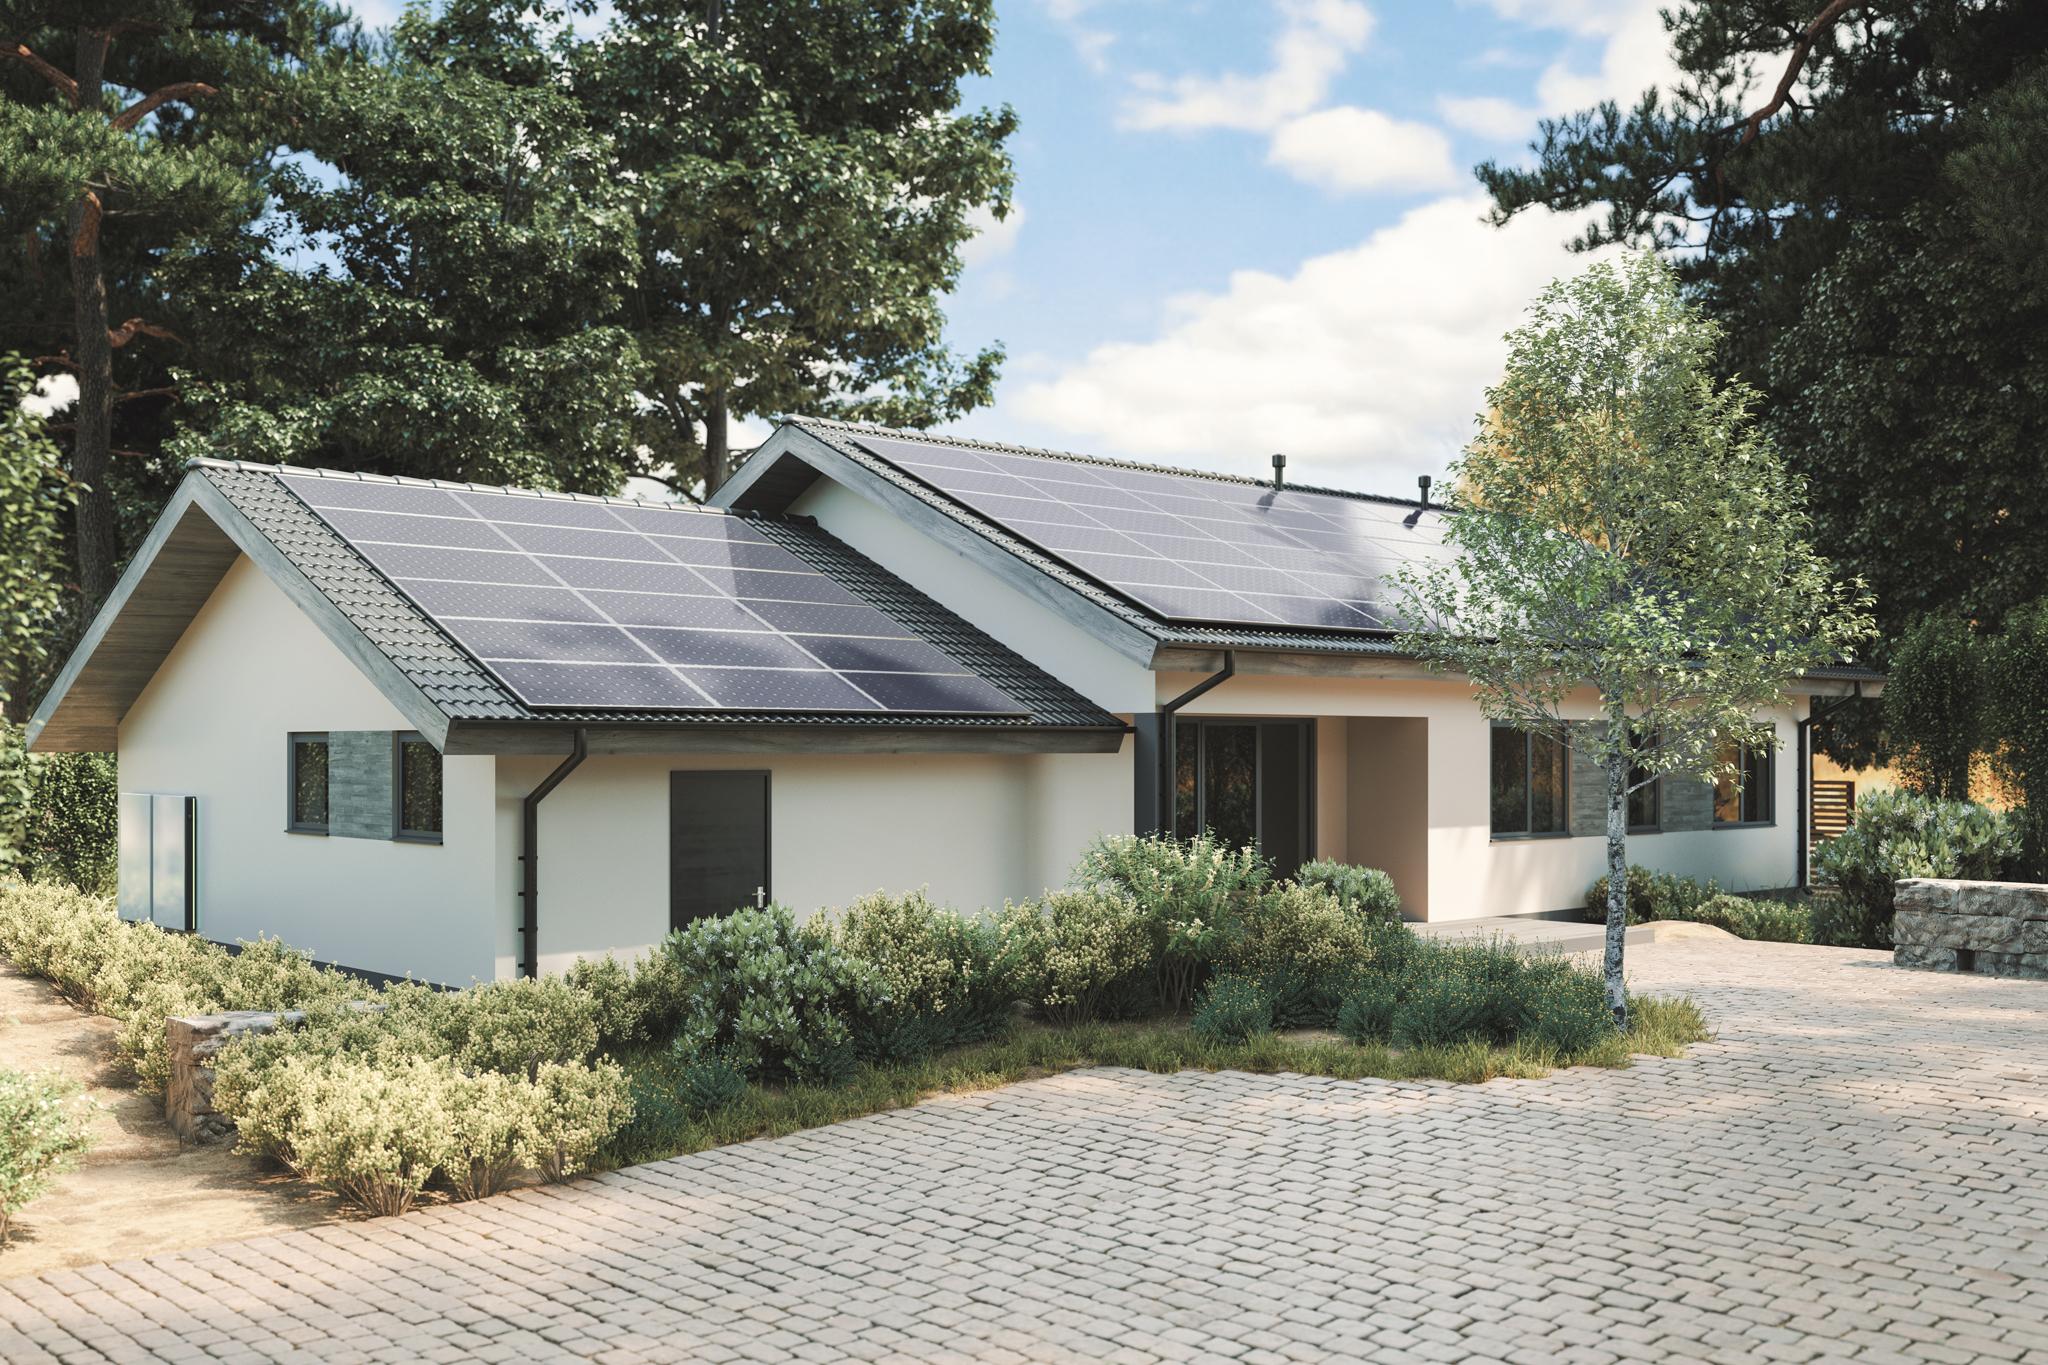 Einfamilienhaus mit PV-Anlage auf dem Dach - Solaranlage kaufen?